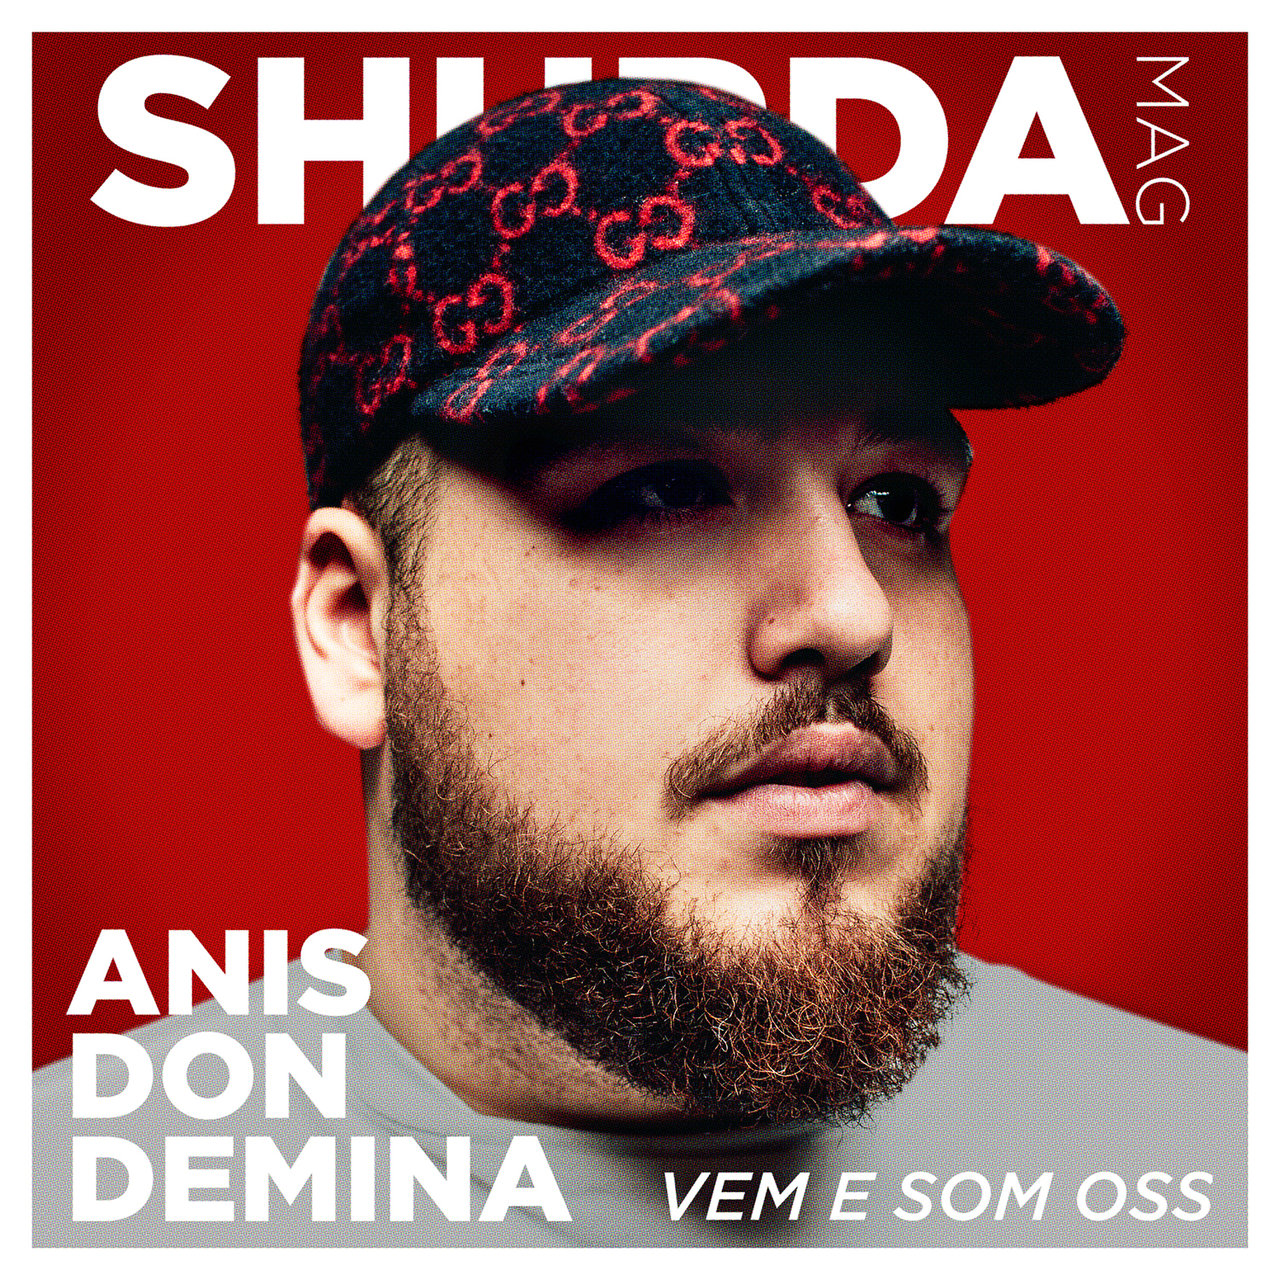 Anis Don Demina — Vem e som oss cover artwork